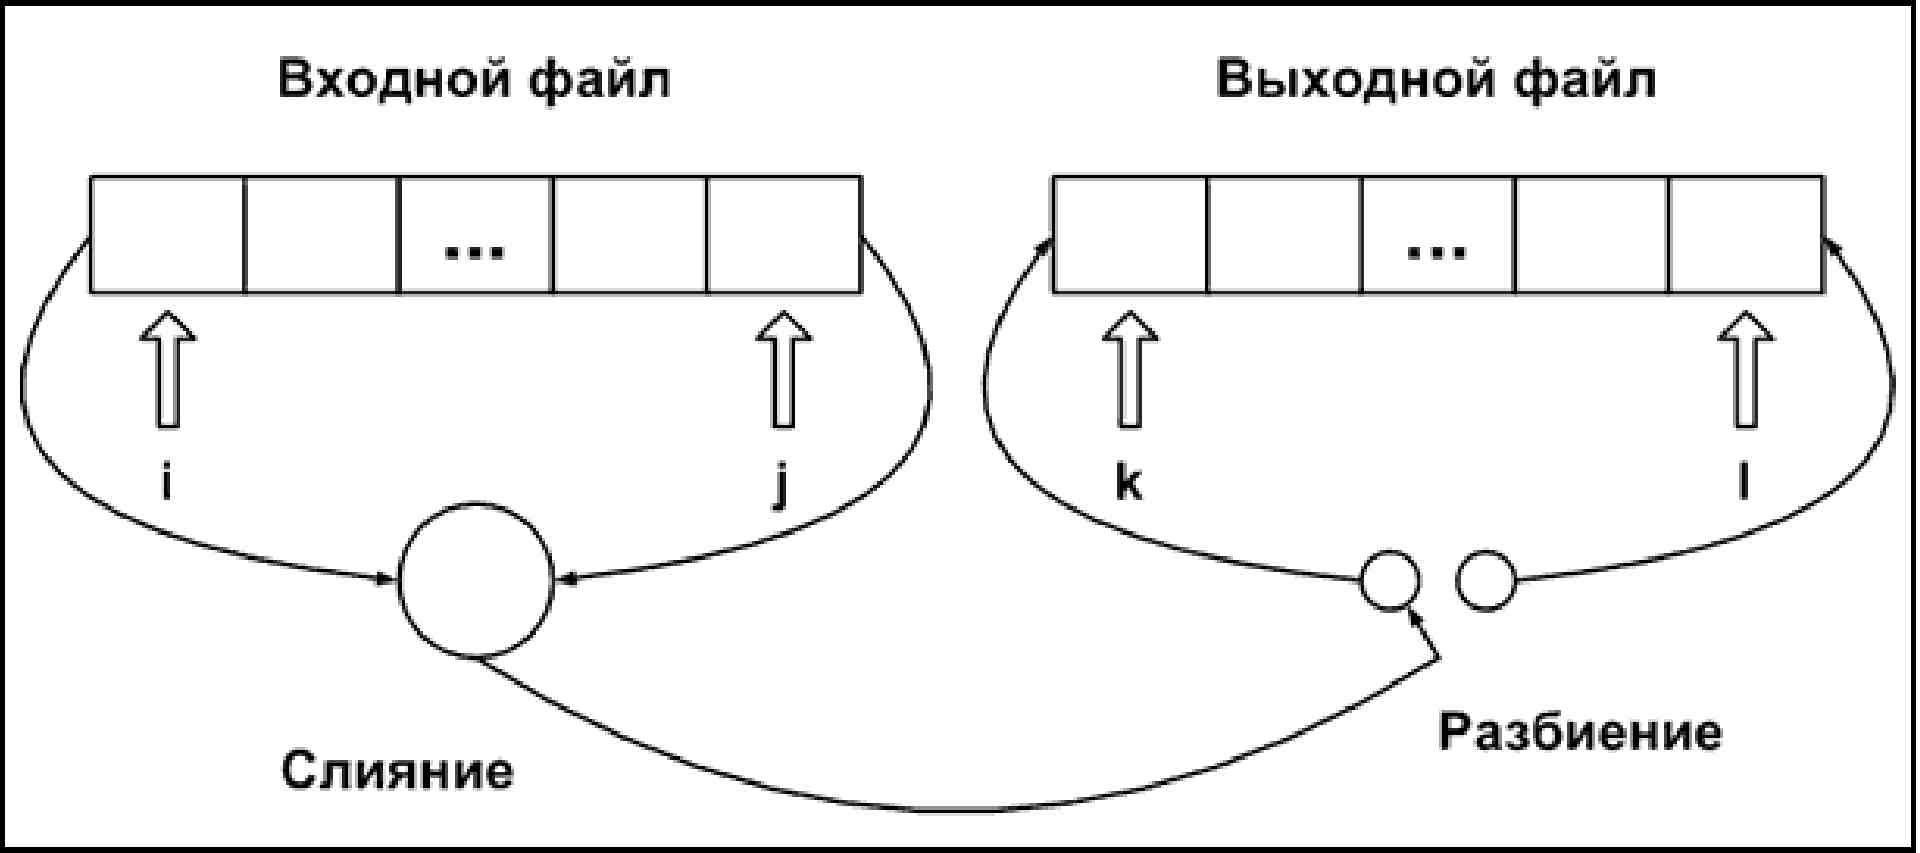 Разбиение 10. Диаграмма Юнга. Схема упорядоченных разбиений. Разбиение Юнга. Конфигурация (разбиение пространства).